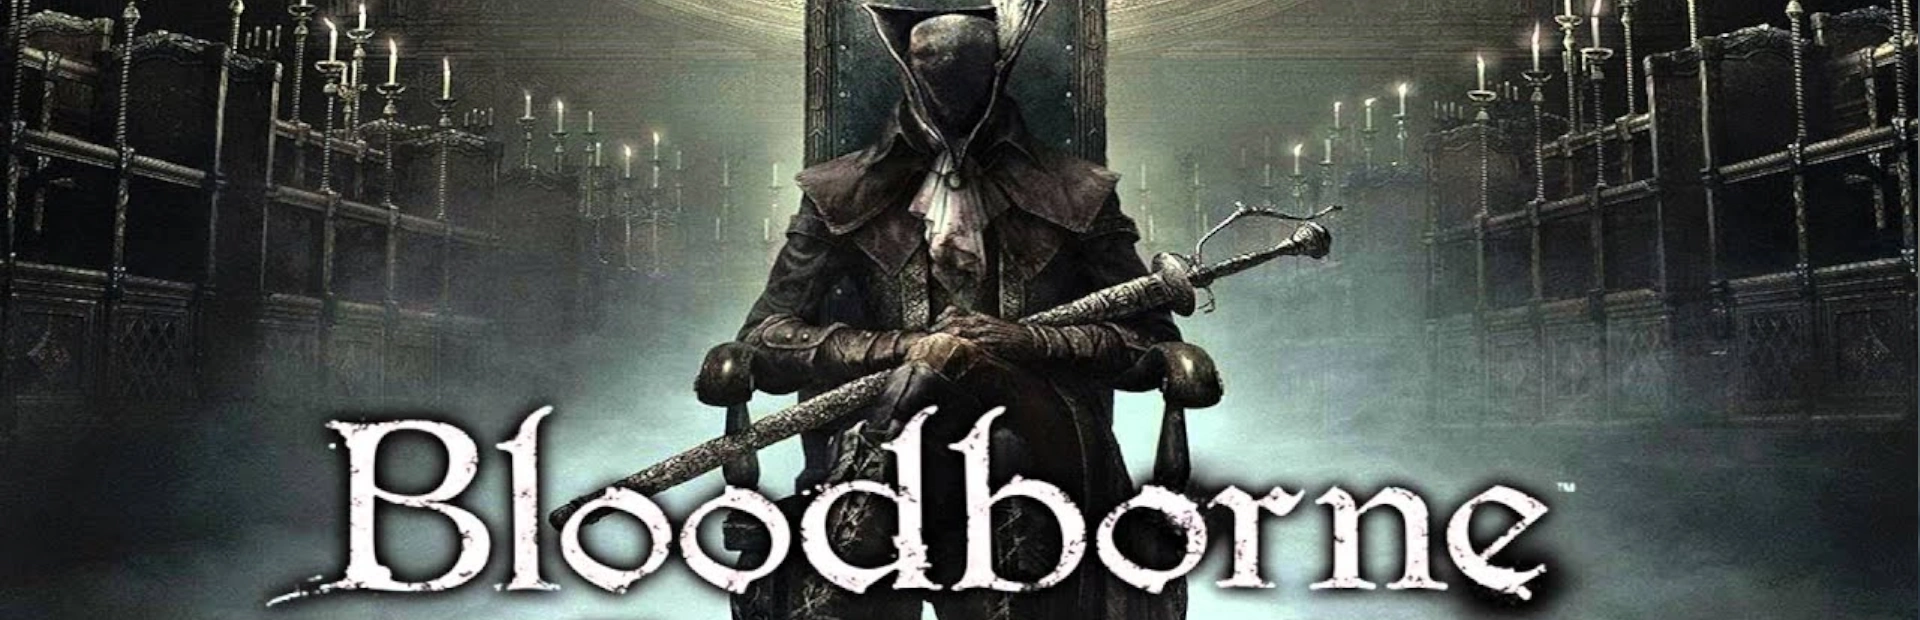 دانلود بازی BLOODBORNE: THE OLD HUNTERS برای PC | گیمباتو